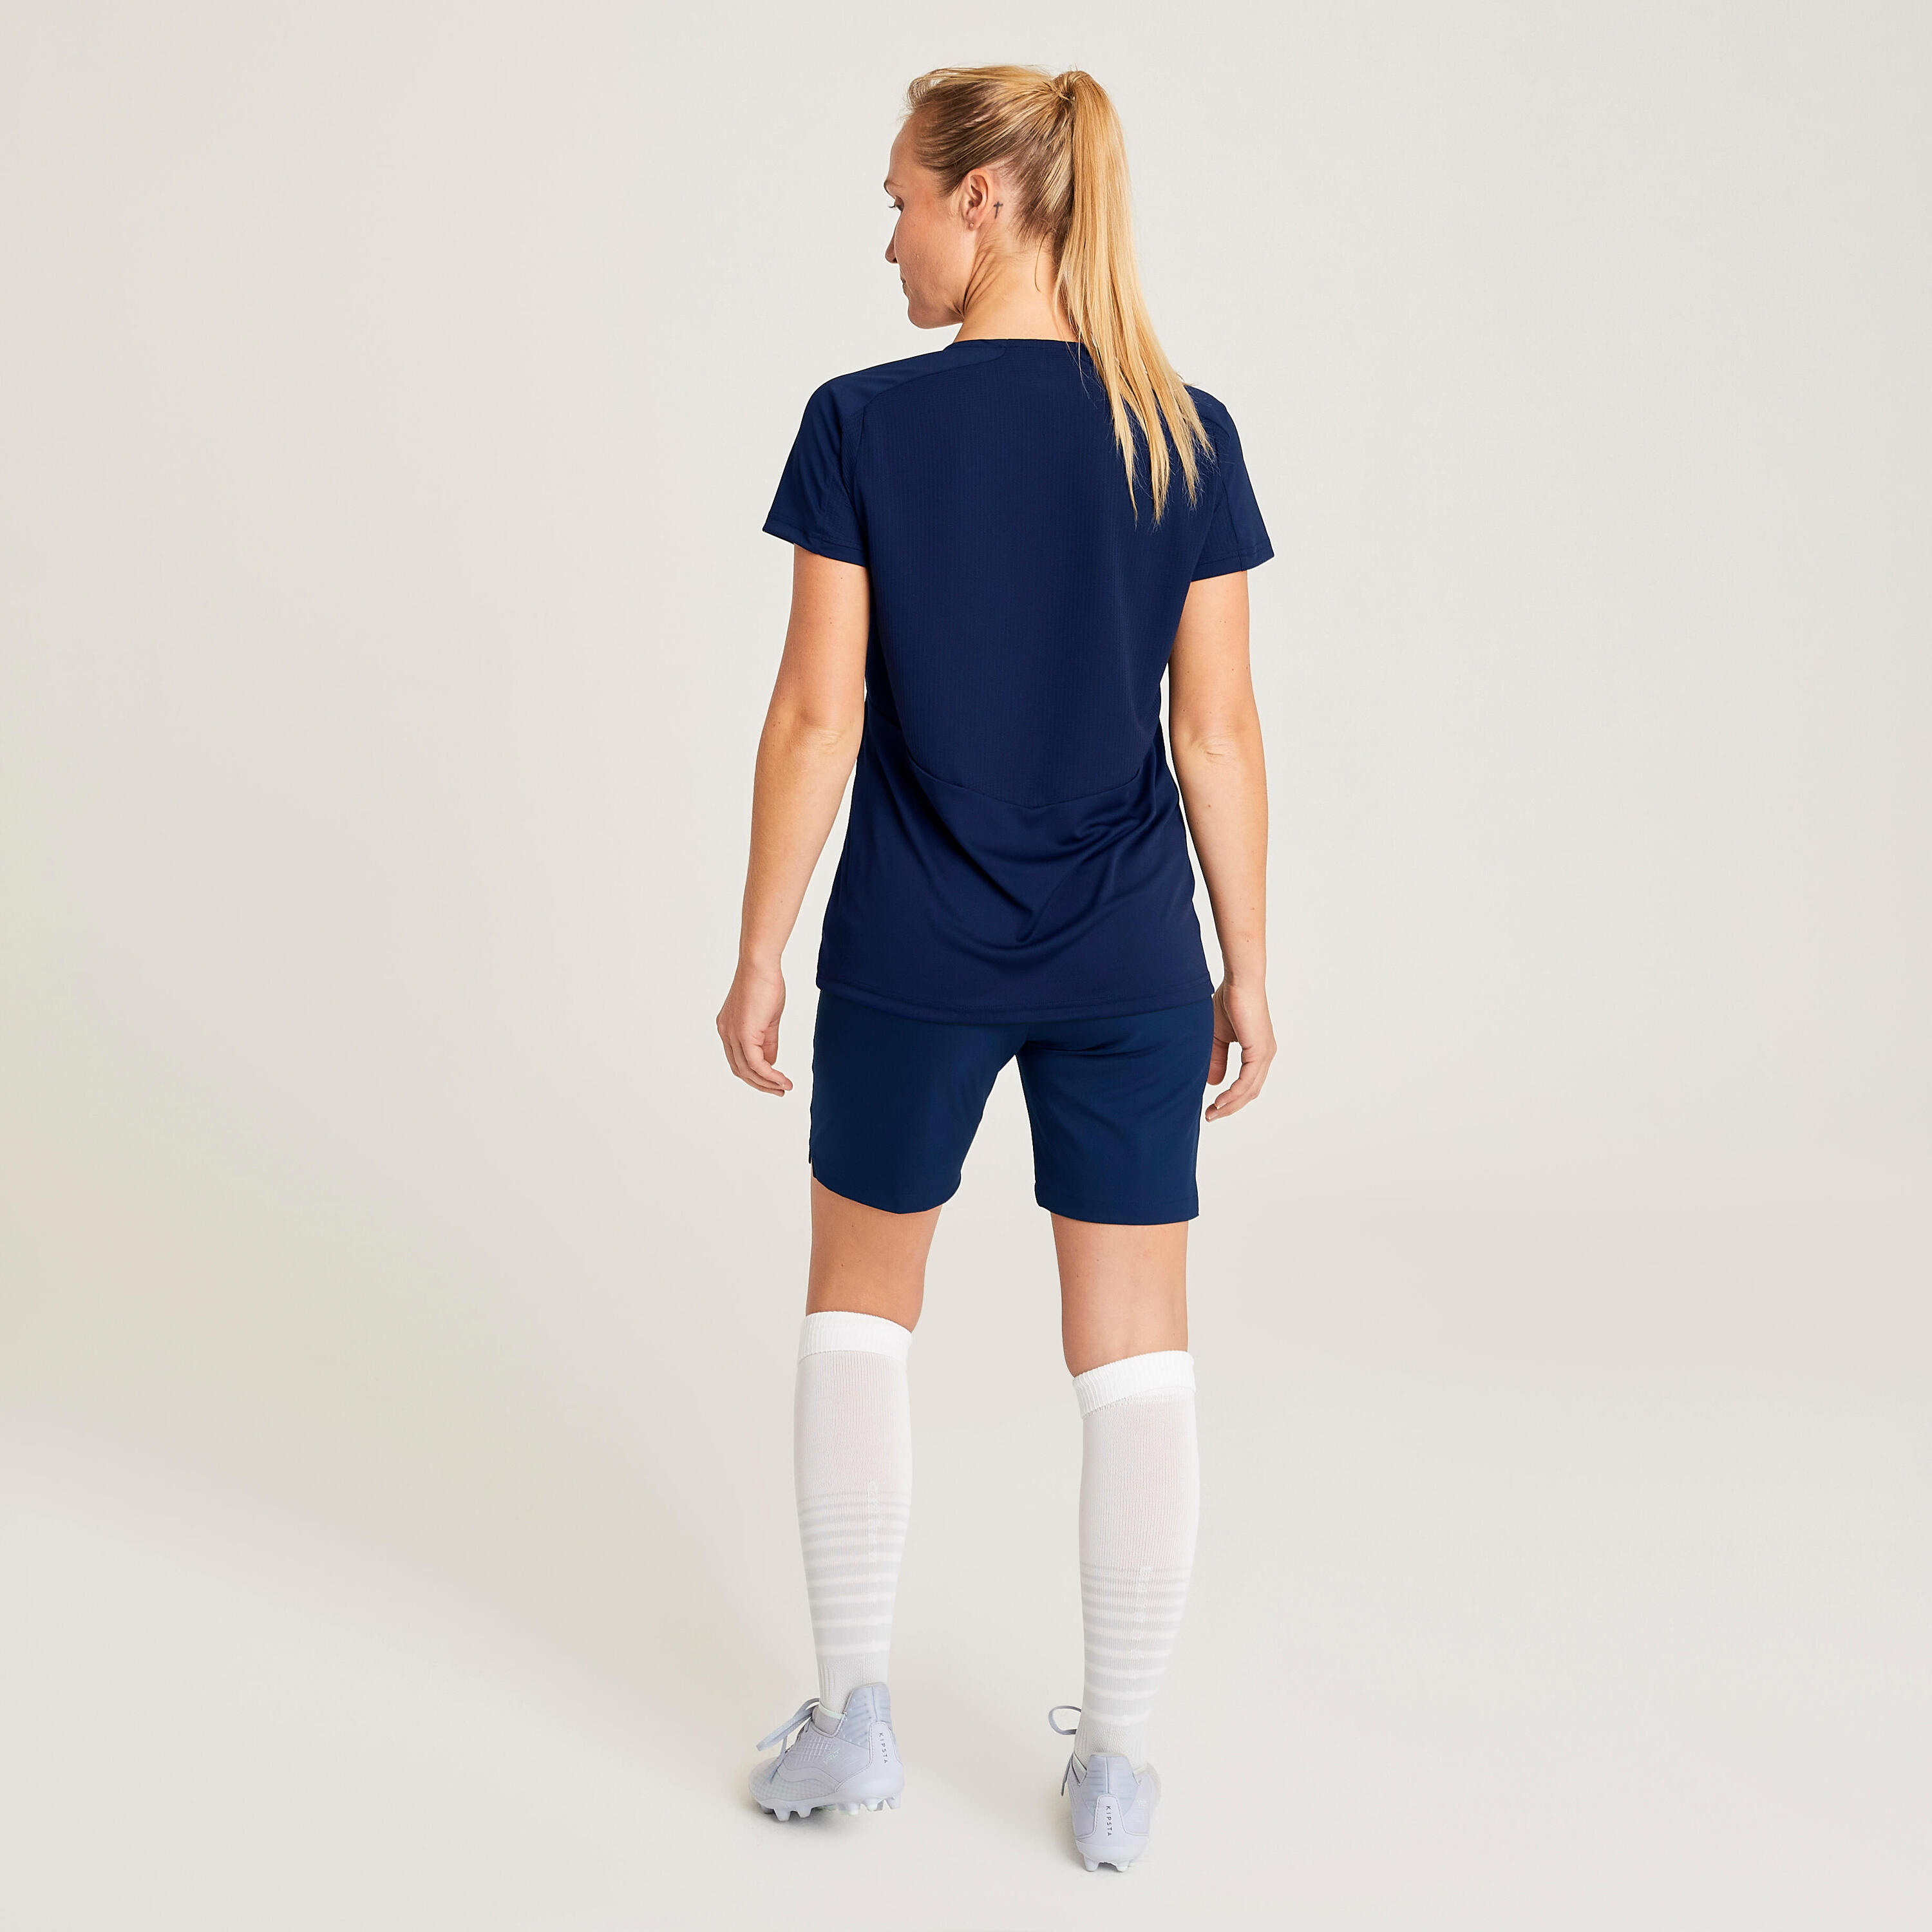 Women's Football Shirt Viralto - Plain Navy 6/10